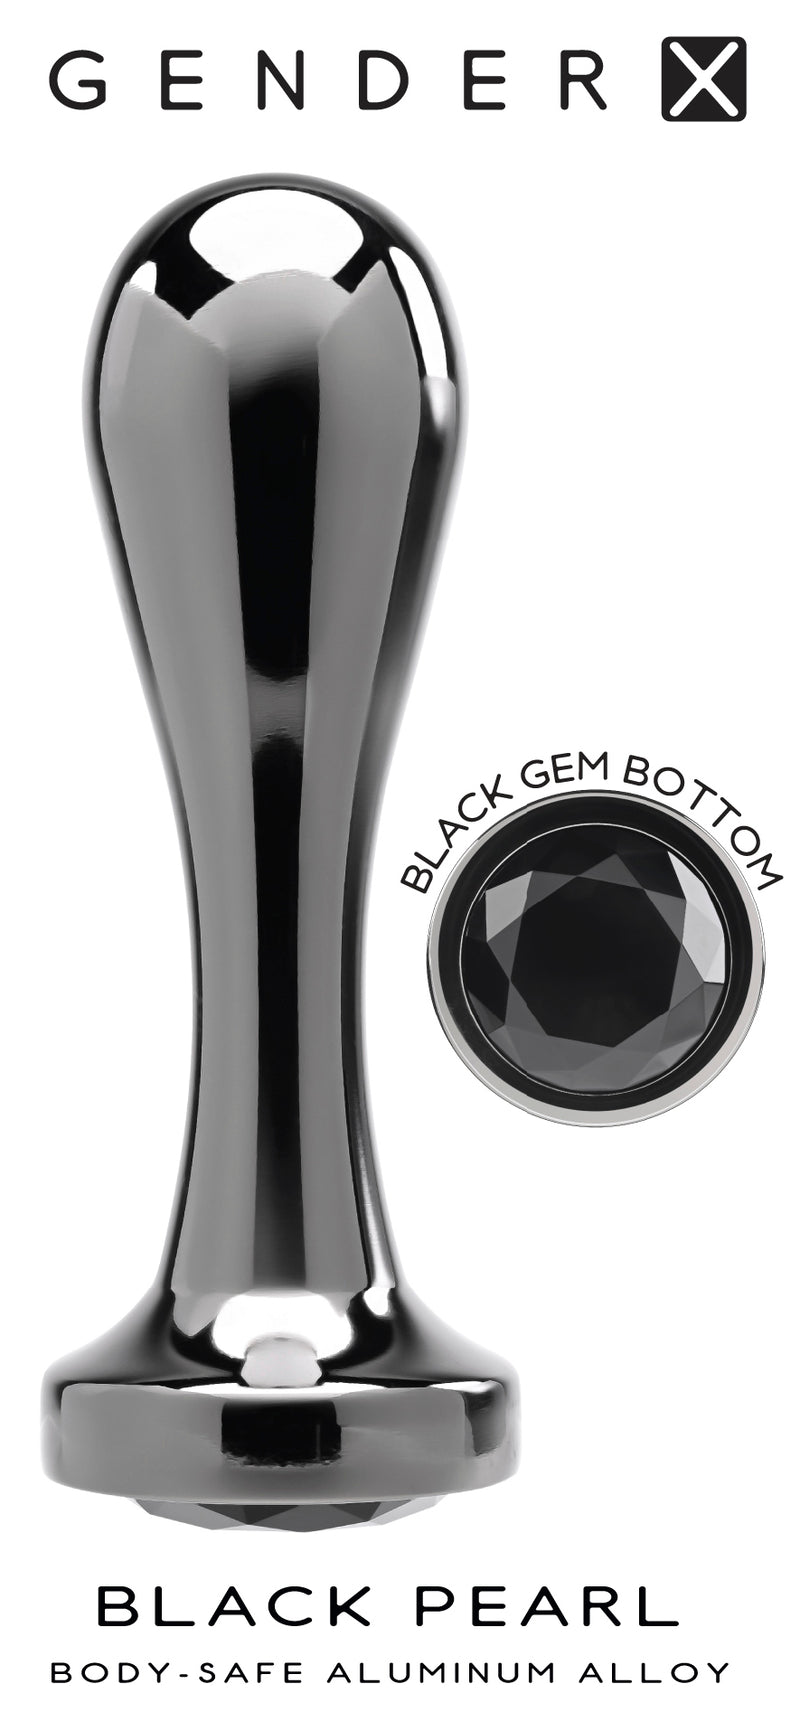 Evolved Novelties Gender X Black Pearl Large Butt Plug at $23.99